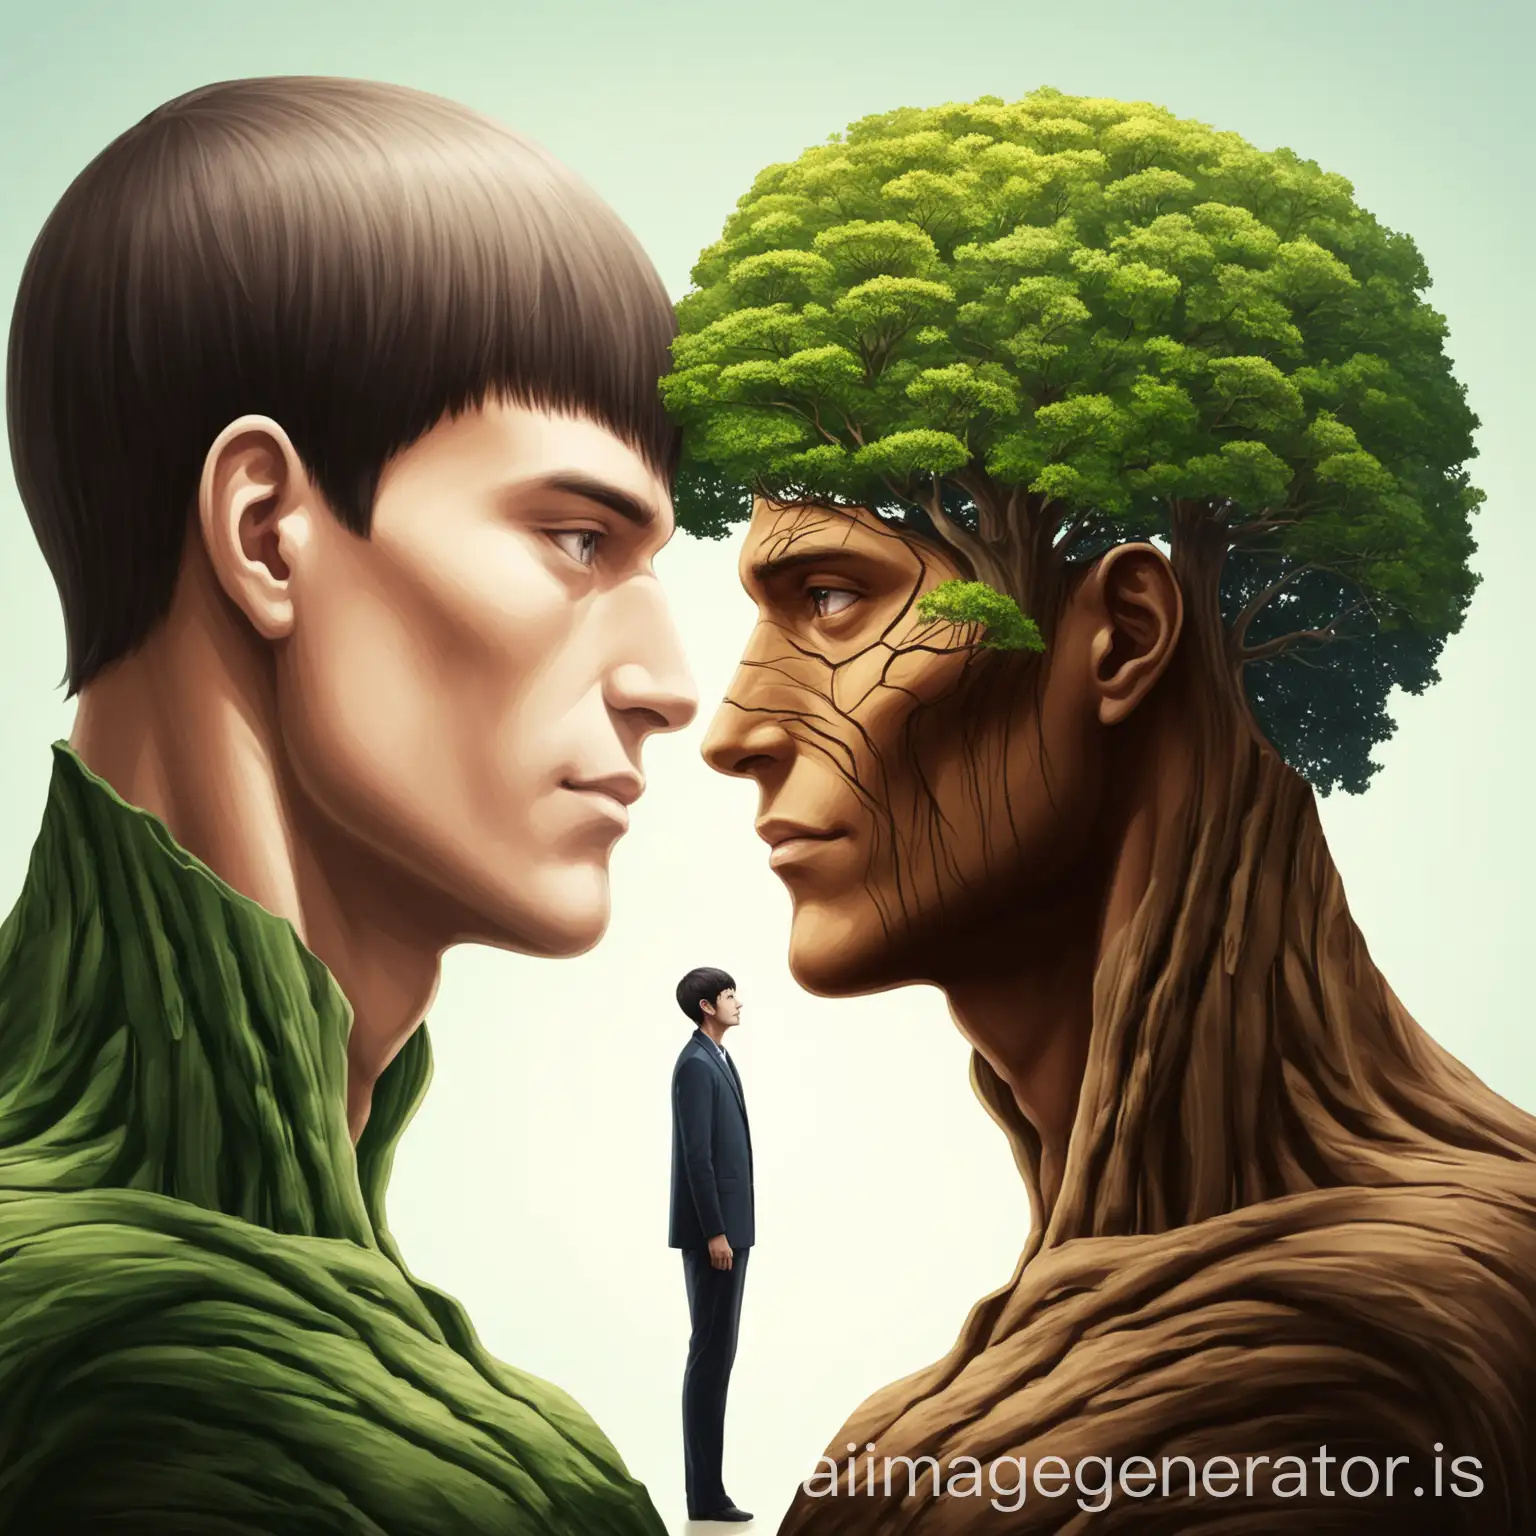 Enigmatic-Encounter-Half-Man-Half-Tree-Gazing-Exchange